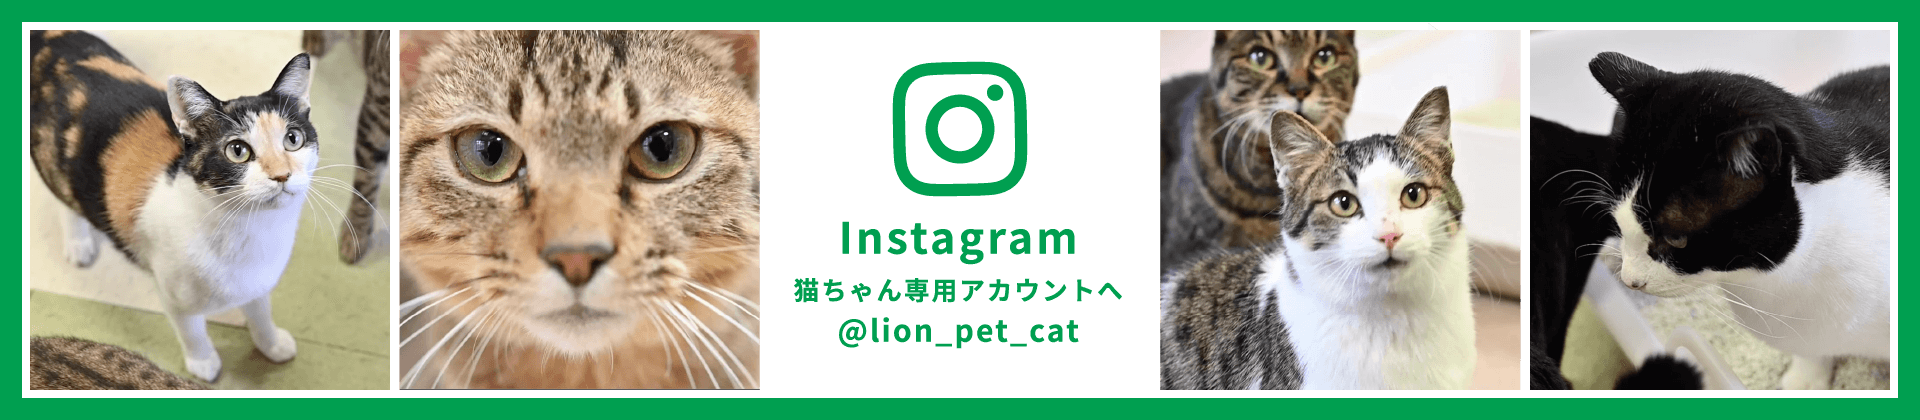 Instagram 猫ちゃん専用アカウントへ @lion_pet_cat